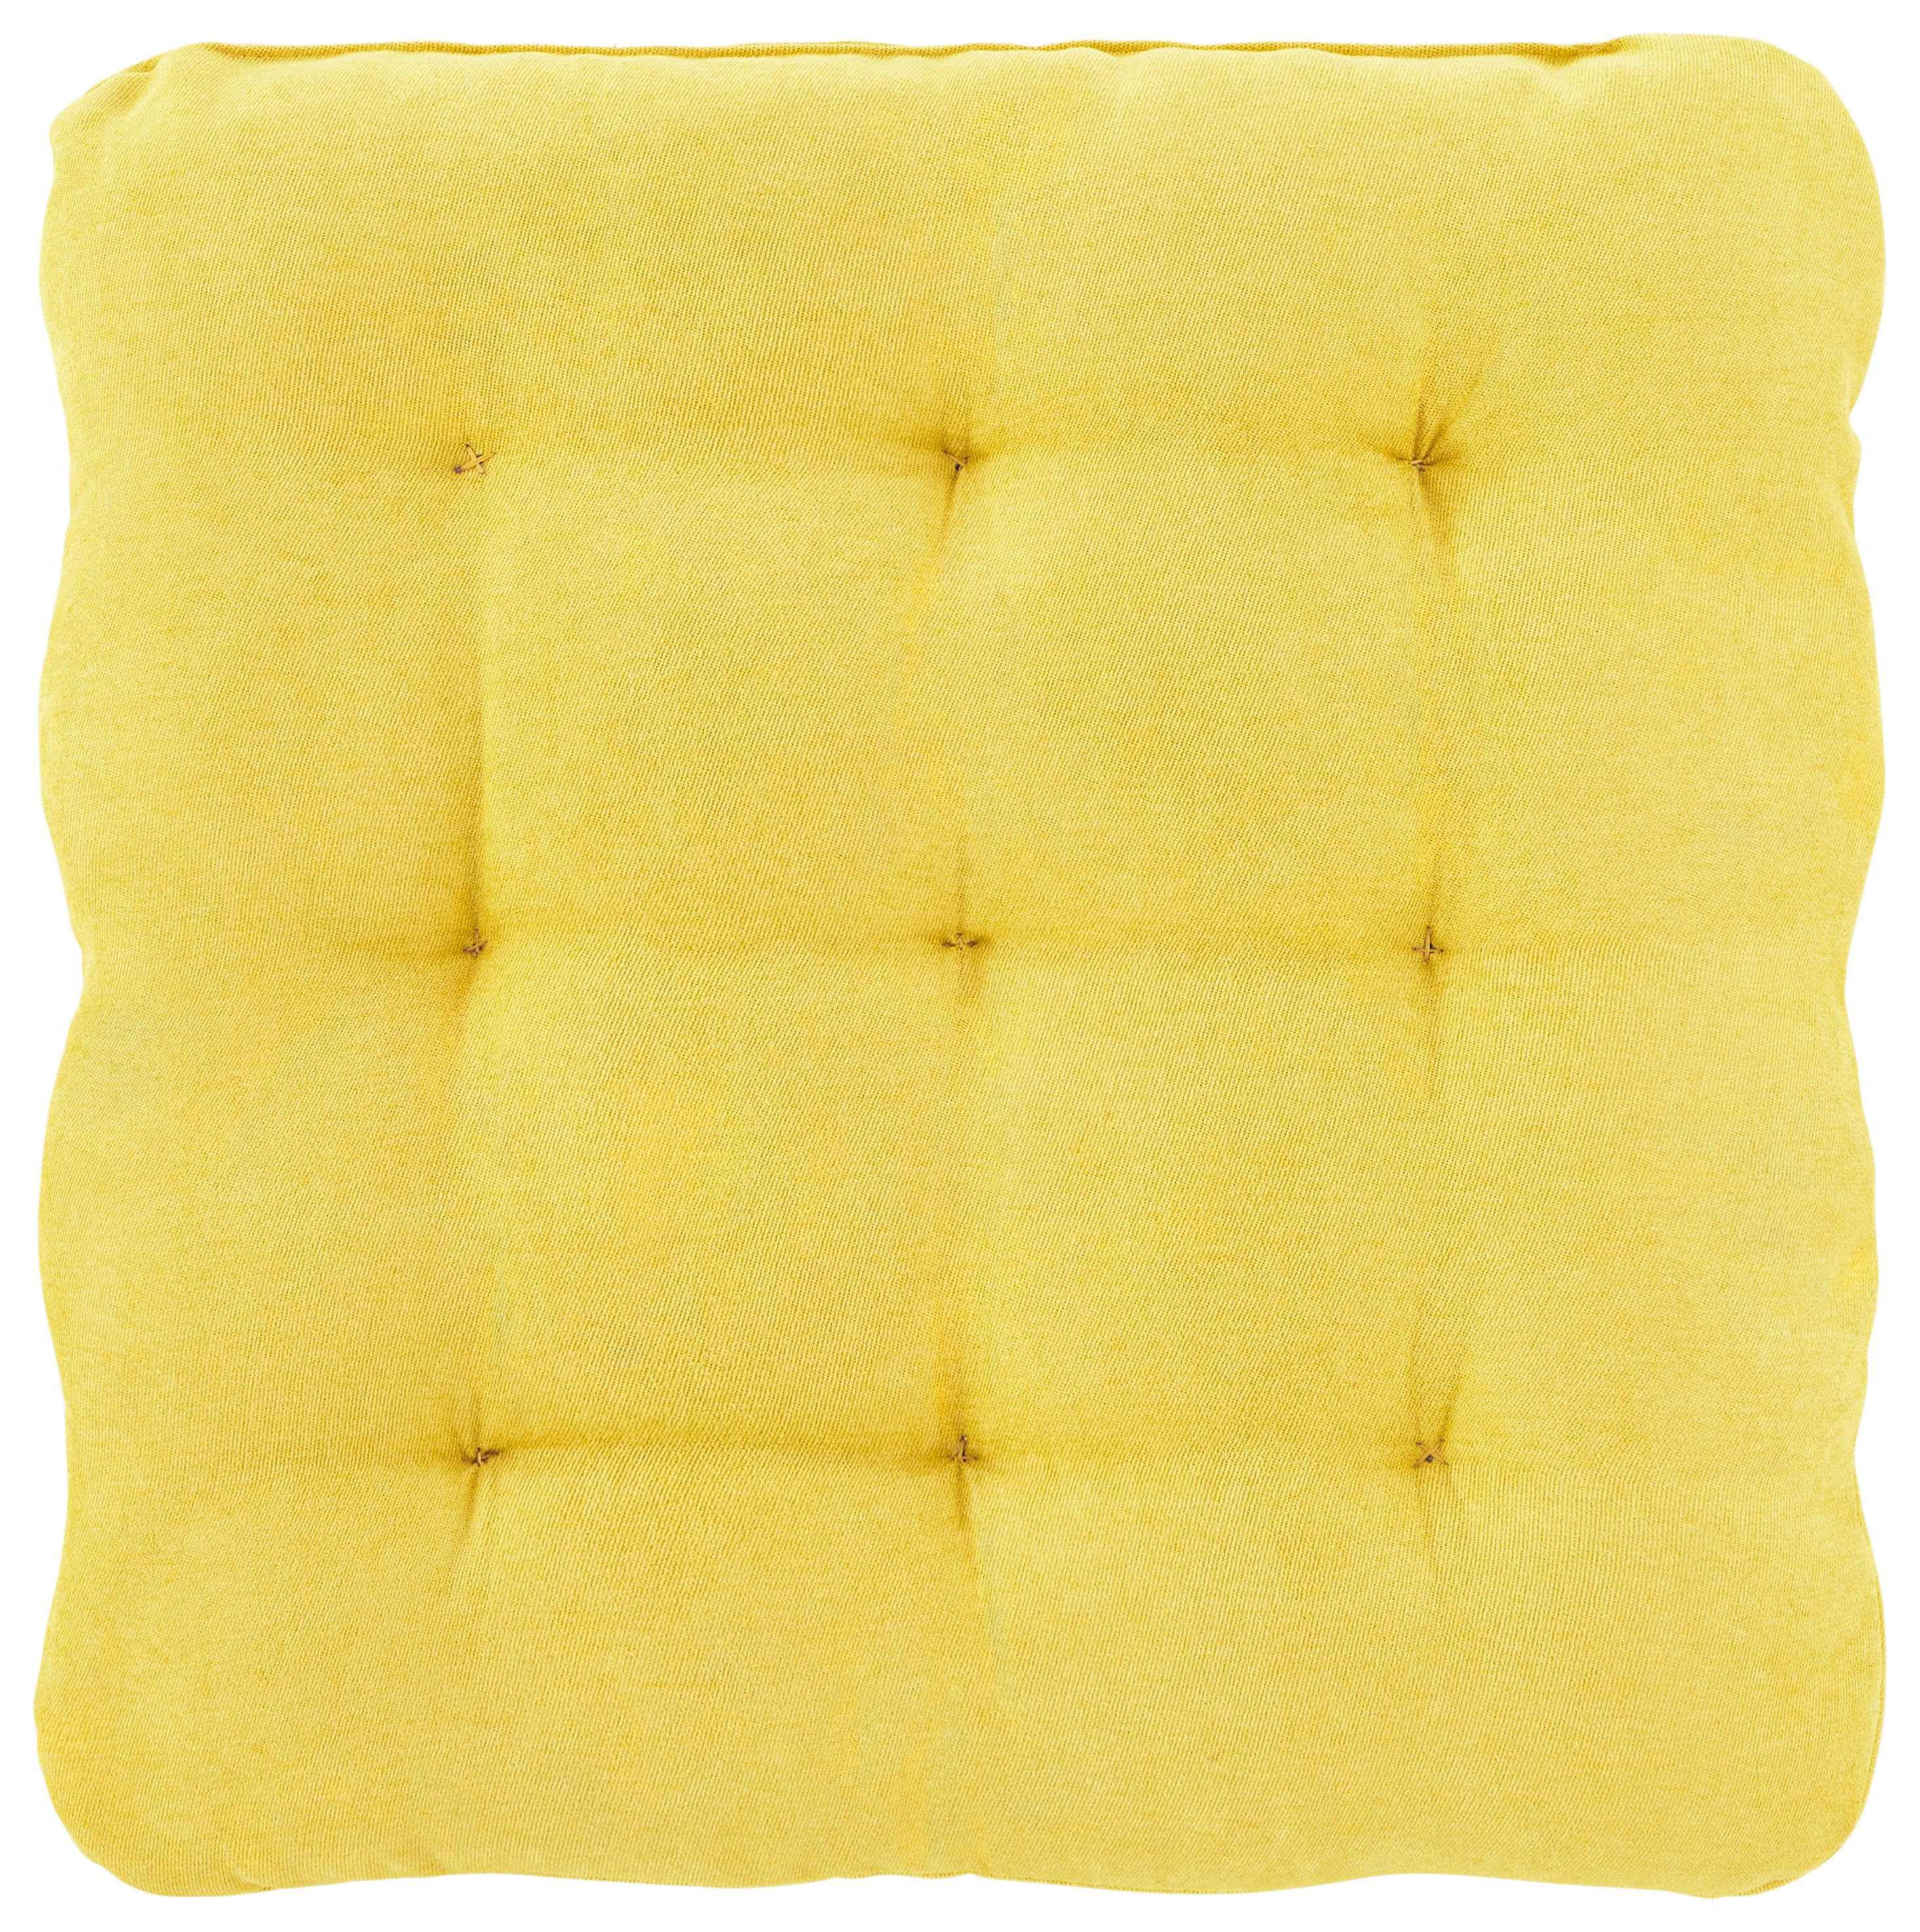 Sedák Nizza, 40/40cm, Žlutá - žlutá, textil (40/40cm) - Modern Living